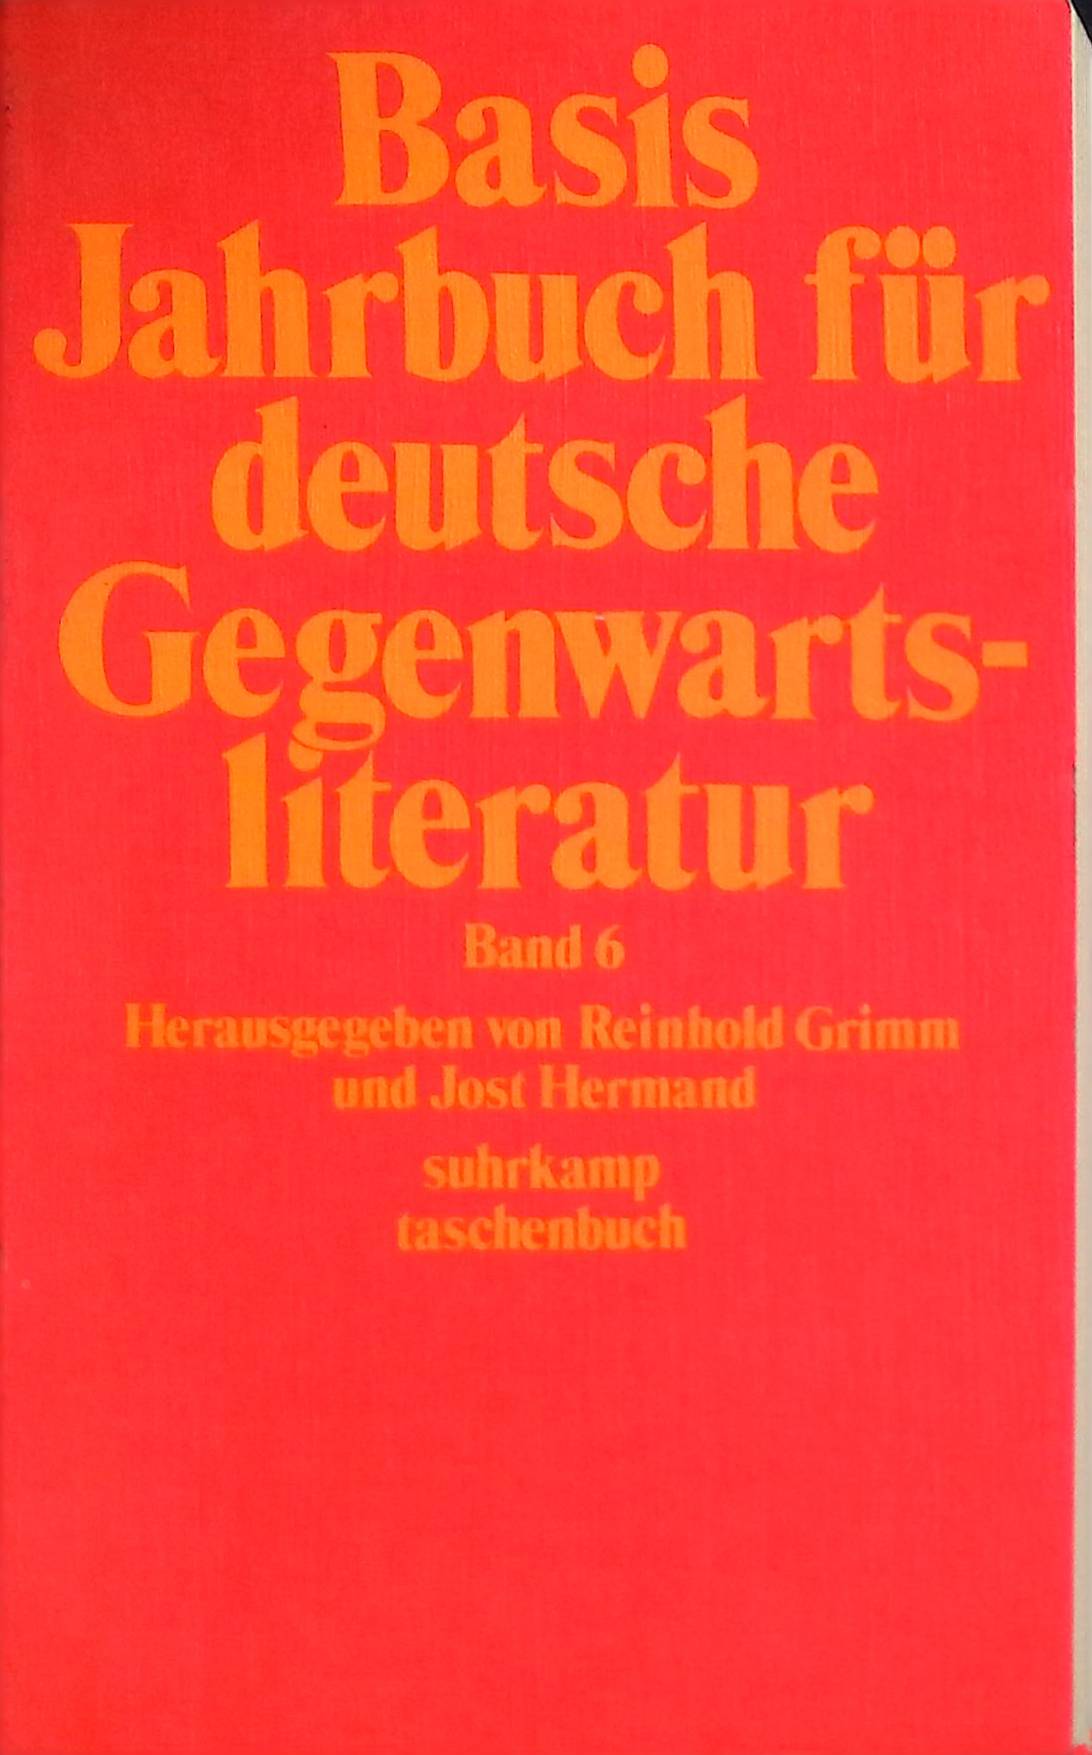 Basis Jahrbuch für deutsche Gegenwartsliteratur Band 6 - edition suhrkamp Band 340 - Grimm, Reinhold (Hrsg.) und Jost (Hrsg.) Hermand